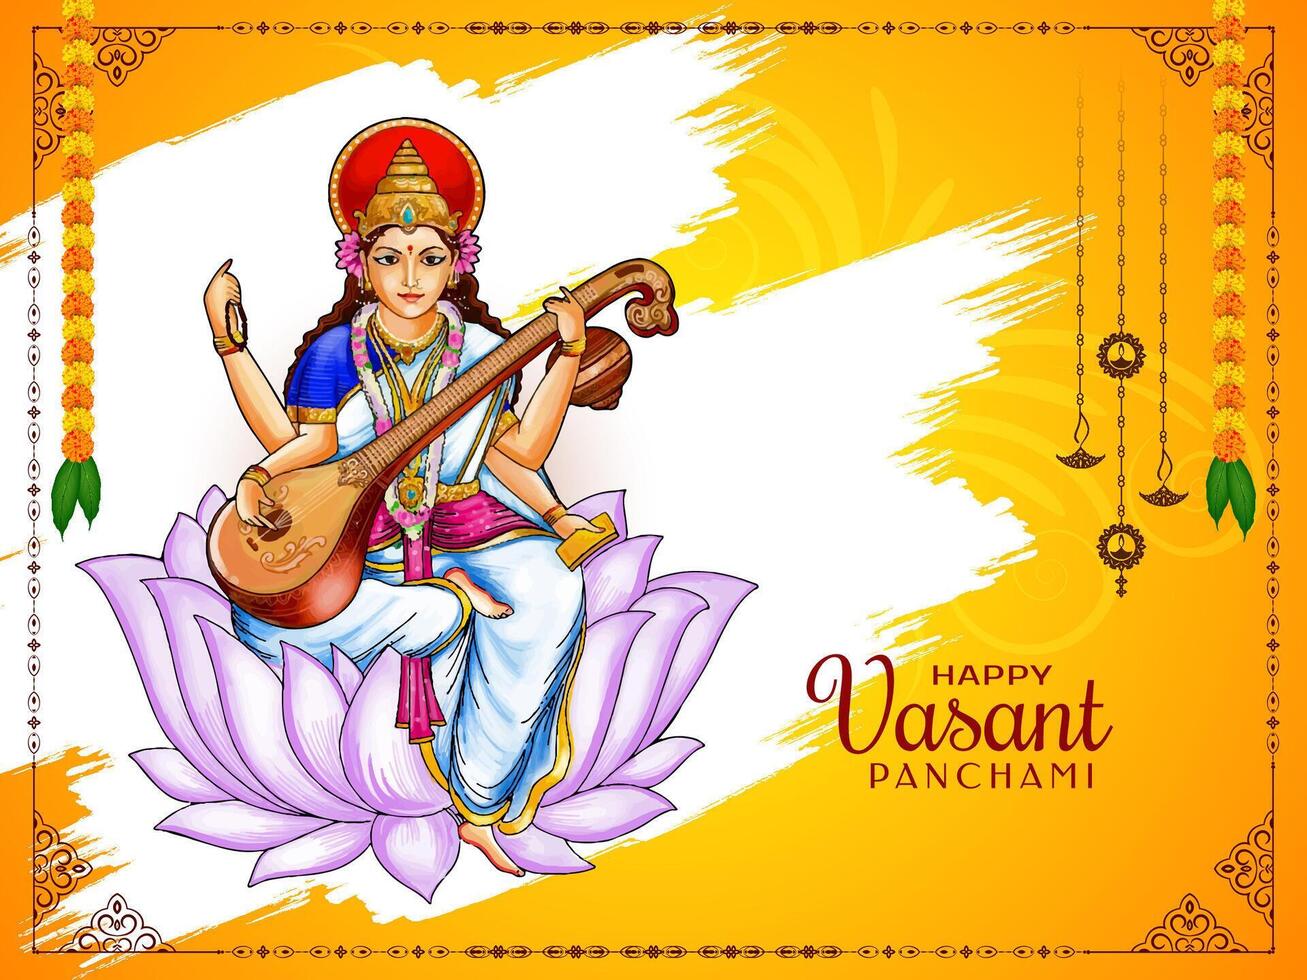 Lycklig vasant panchami traditionell indisk festival med gudinna saraswati illustration vektor